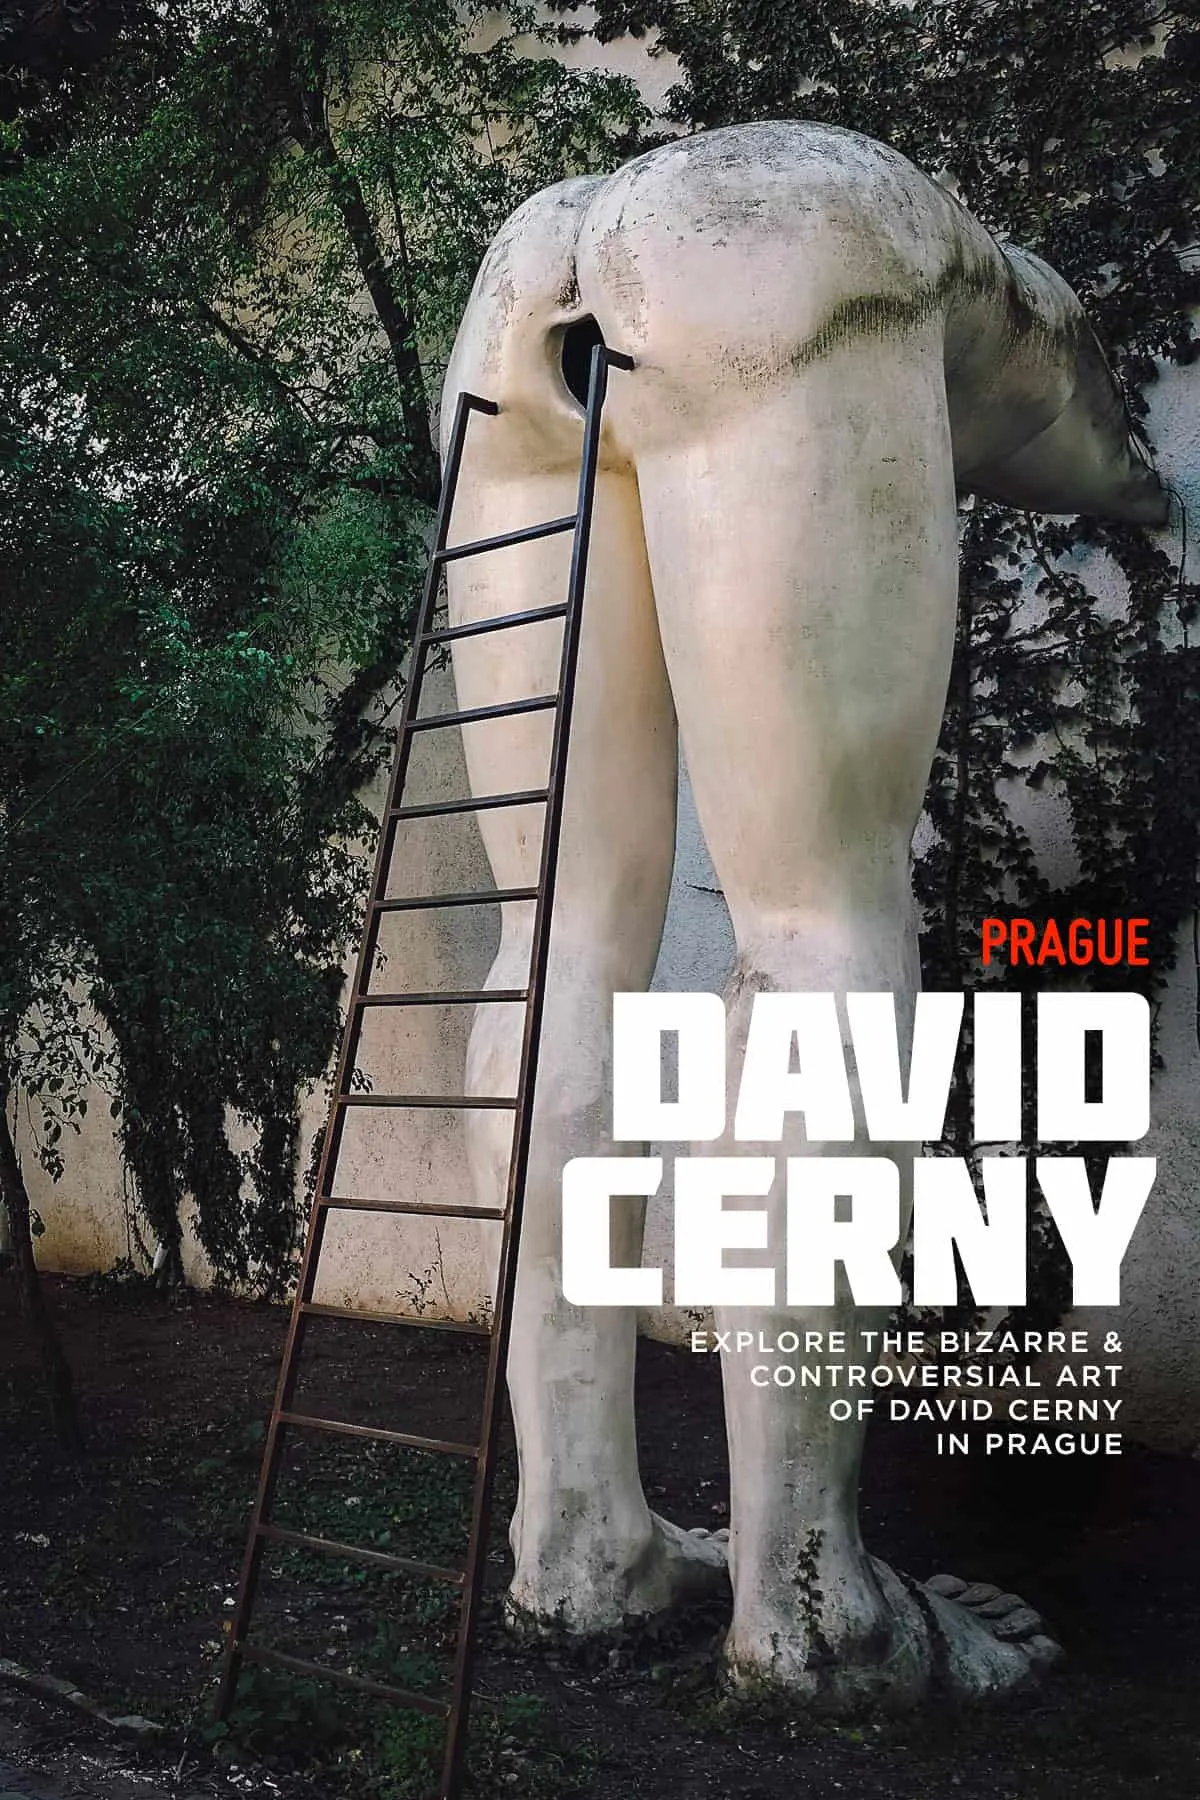 David Cerny sculpture in Prague, Czech Republic